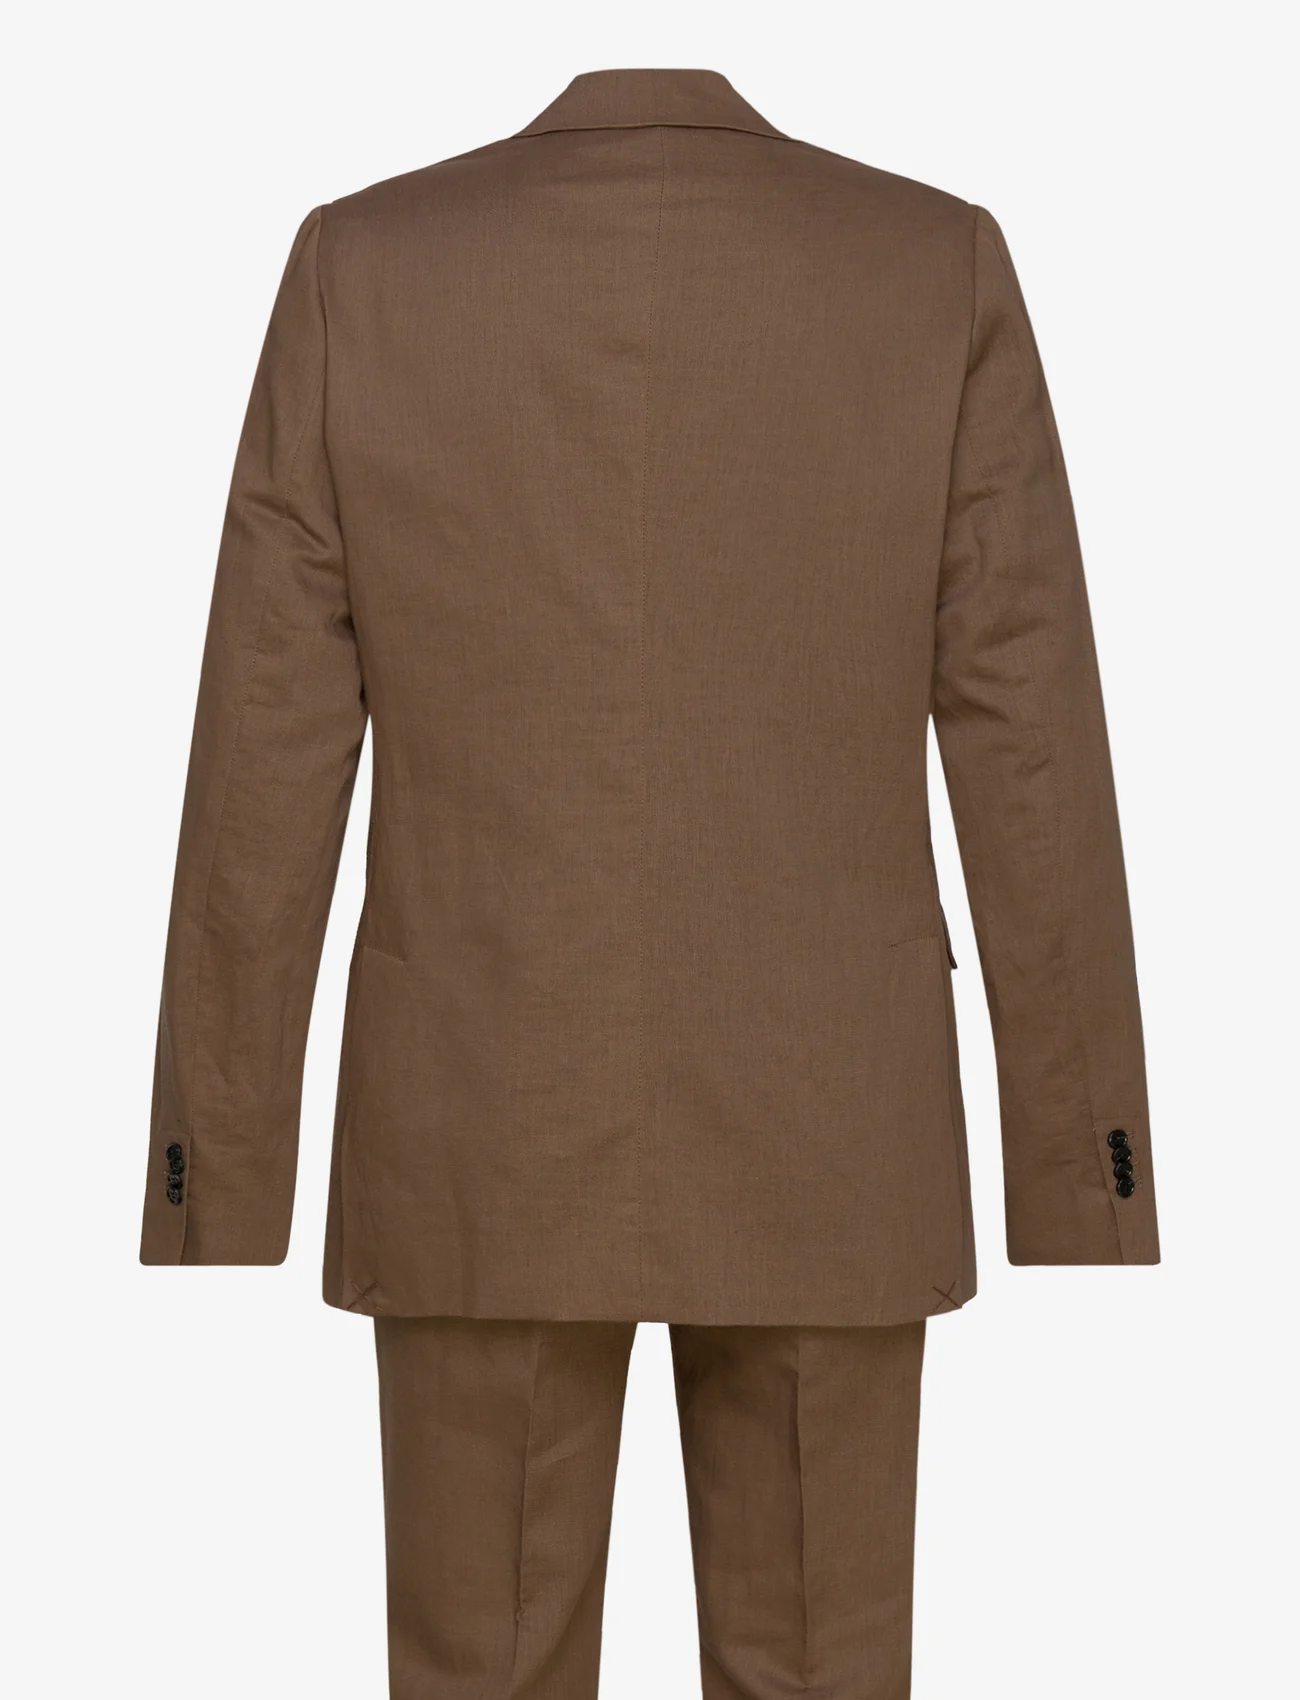 Bruuns Bazaar - LinoBBCarlAxel suit - dobbeltradede jakkesæt - toffee - 1